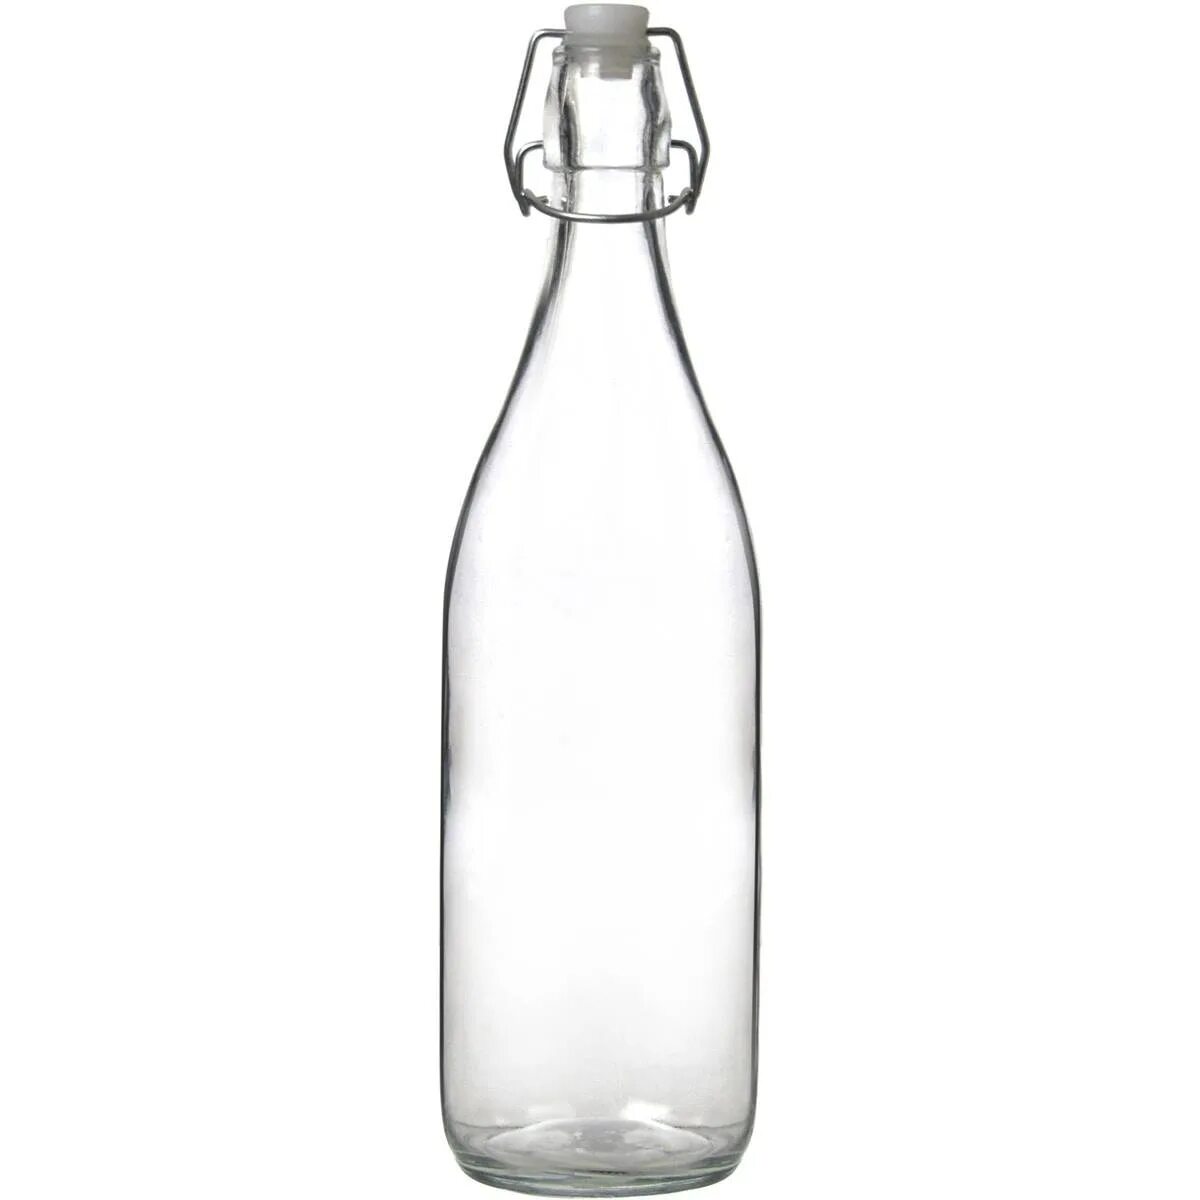 Бутылка с крышкой стекло. Бутылка бугель 0.5. Икеа бутылка с пробкой 0,5 бугельной 0.5. Икеа бутылка с пробкой стеклянная 0.5. Бутылка 100 мл бугель.